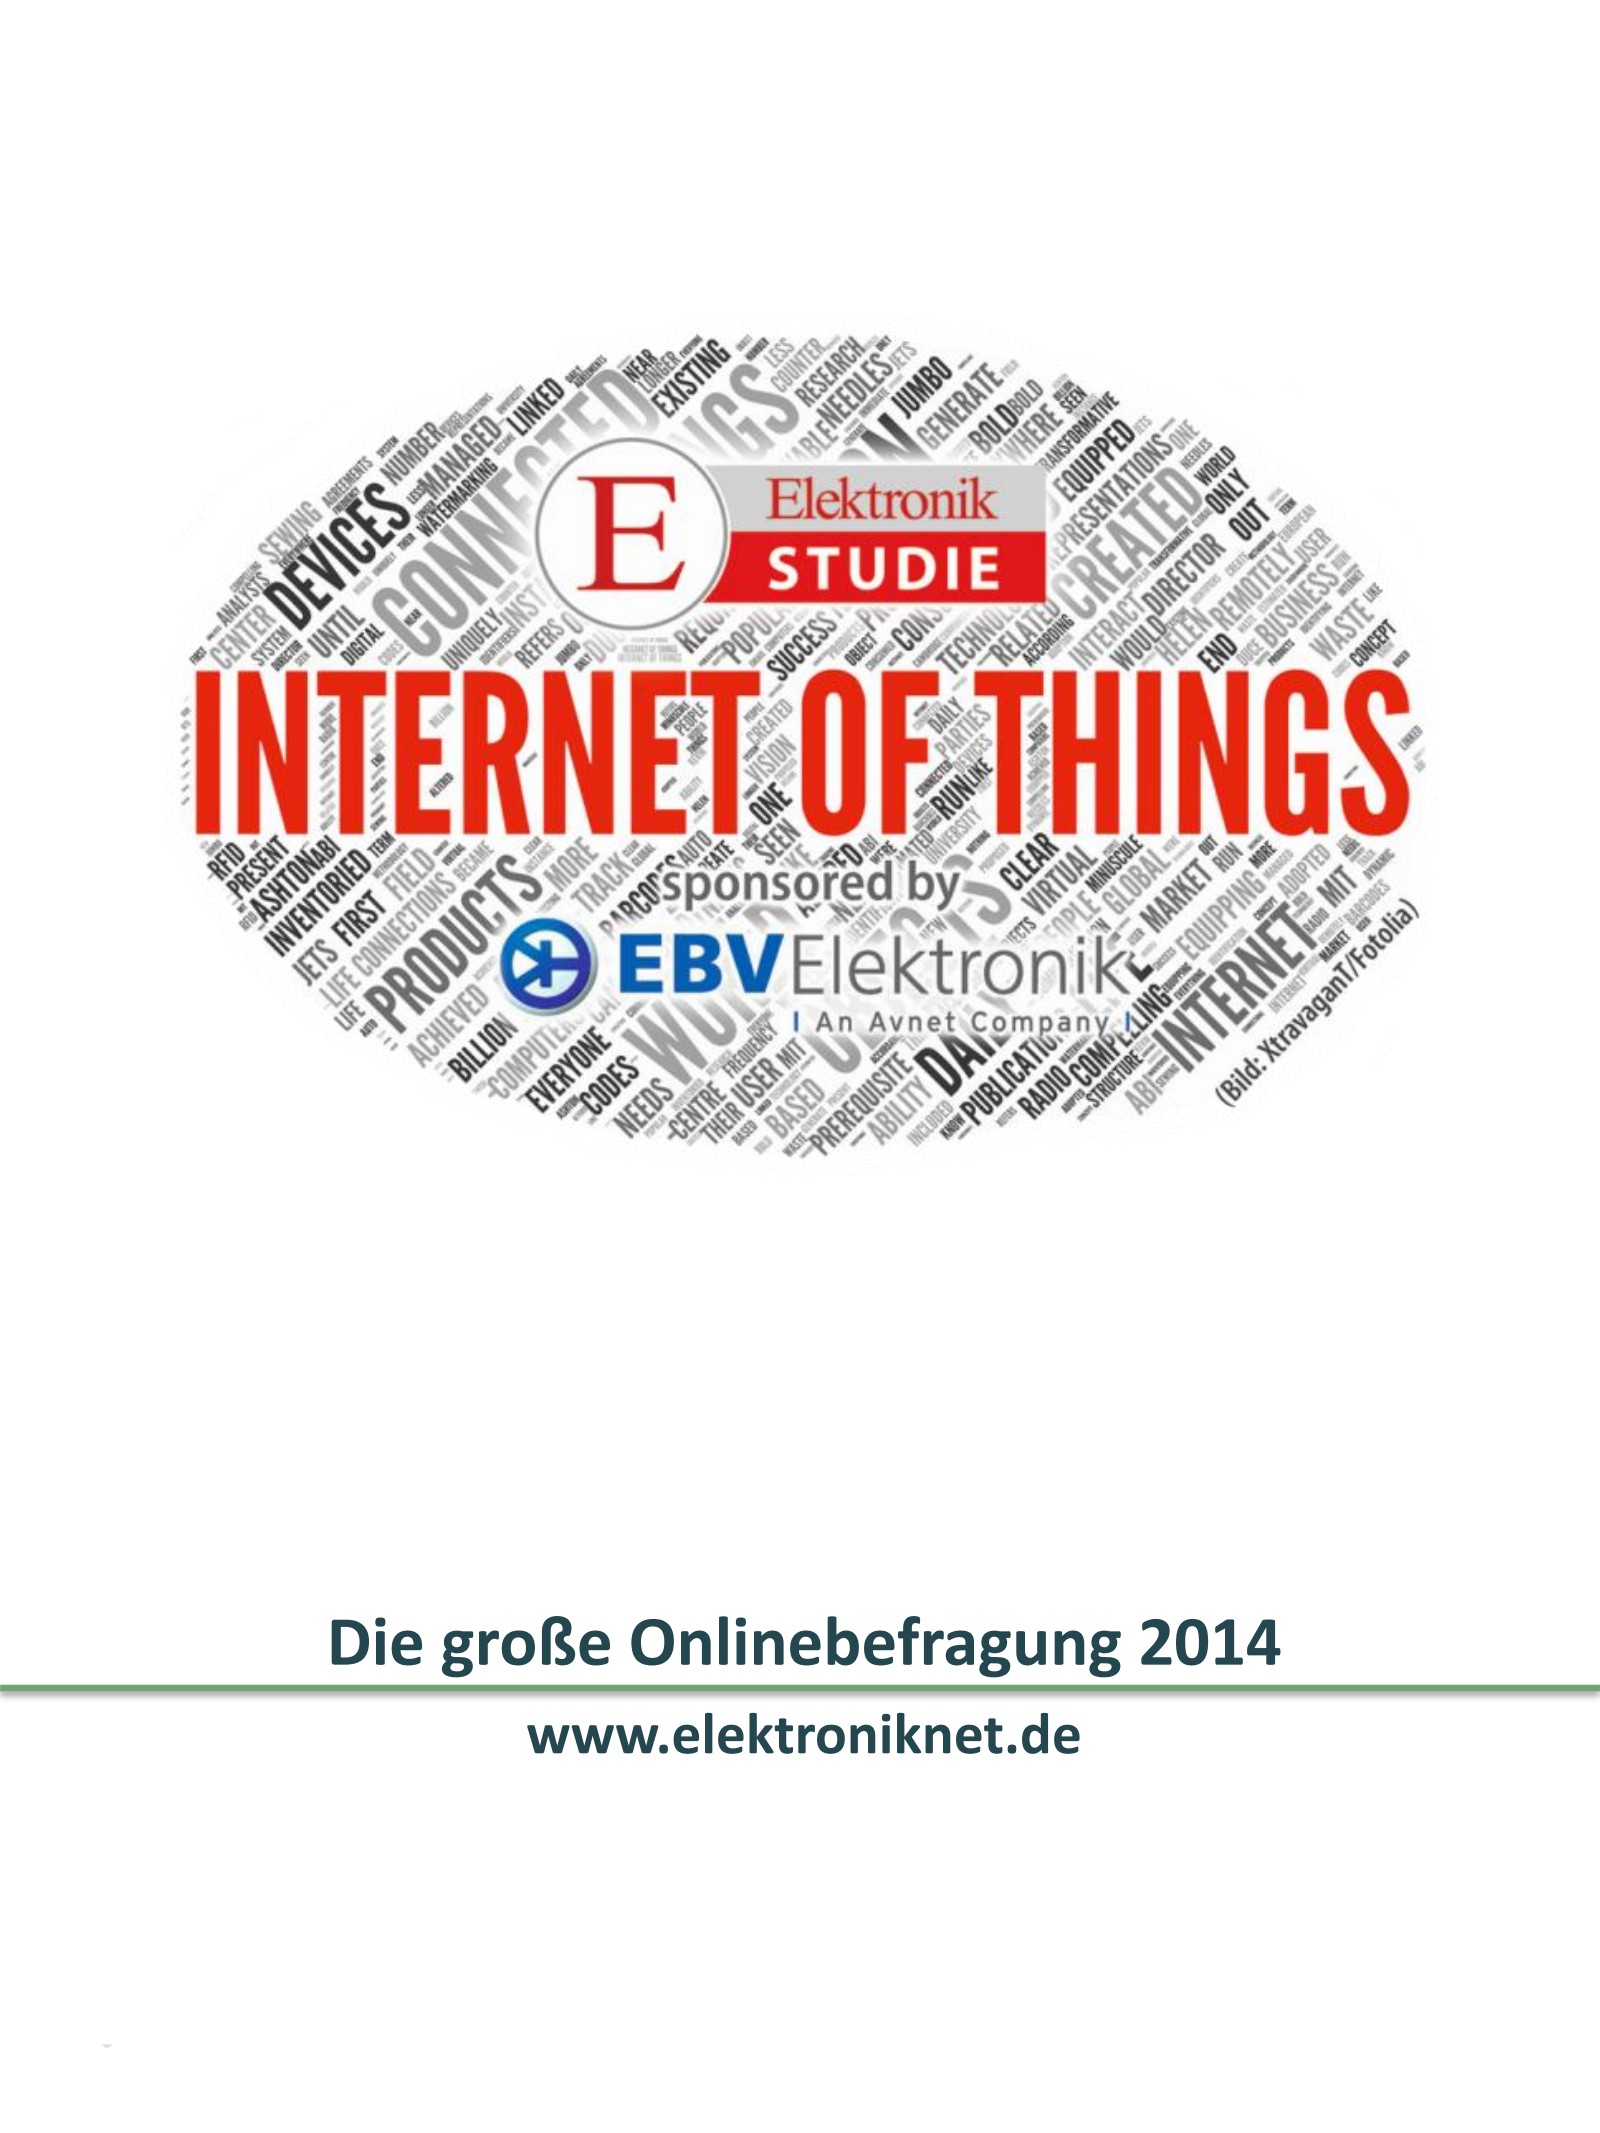 Elektronik Studie Internet of Things 2014 Digital